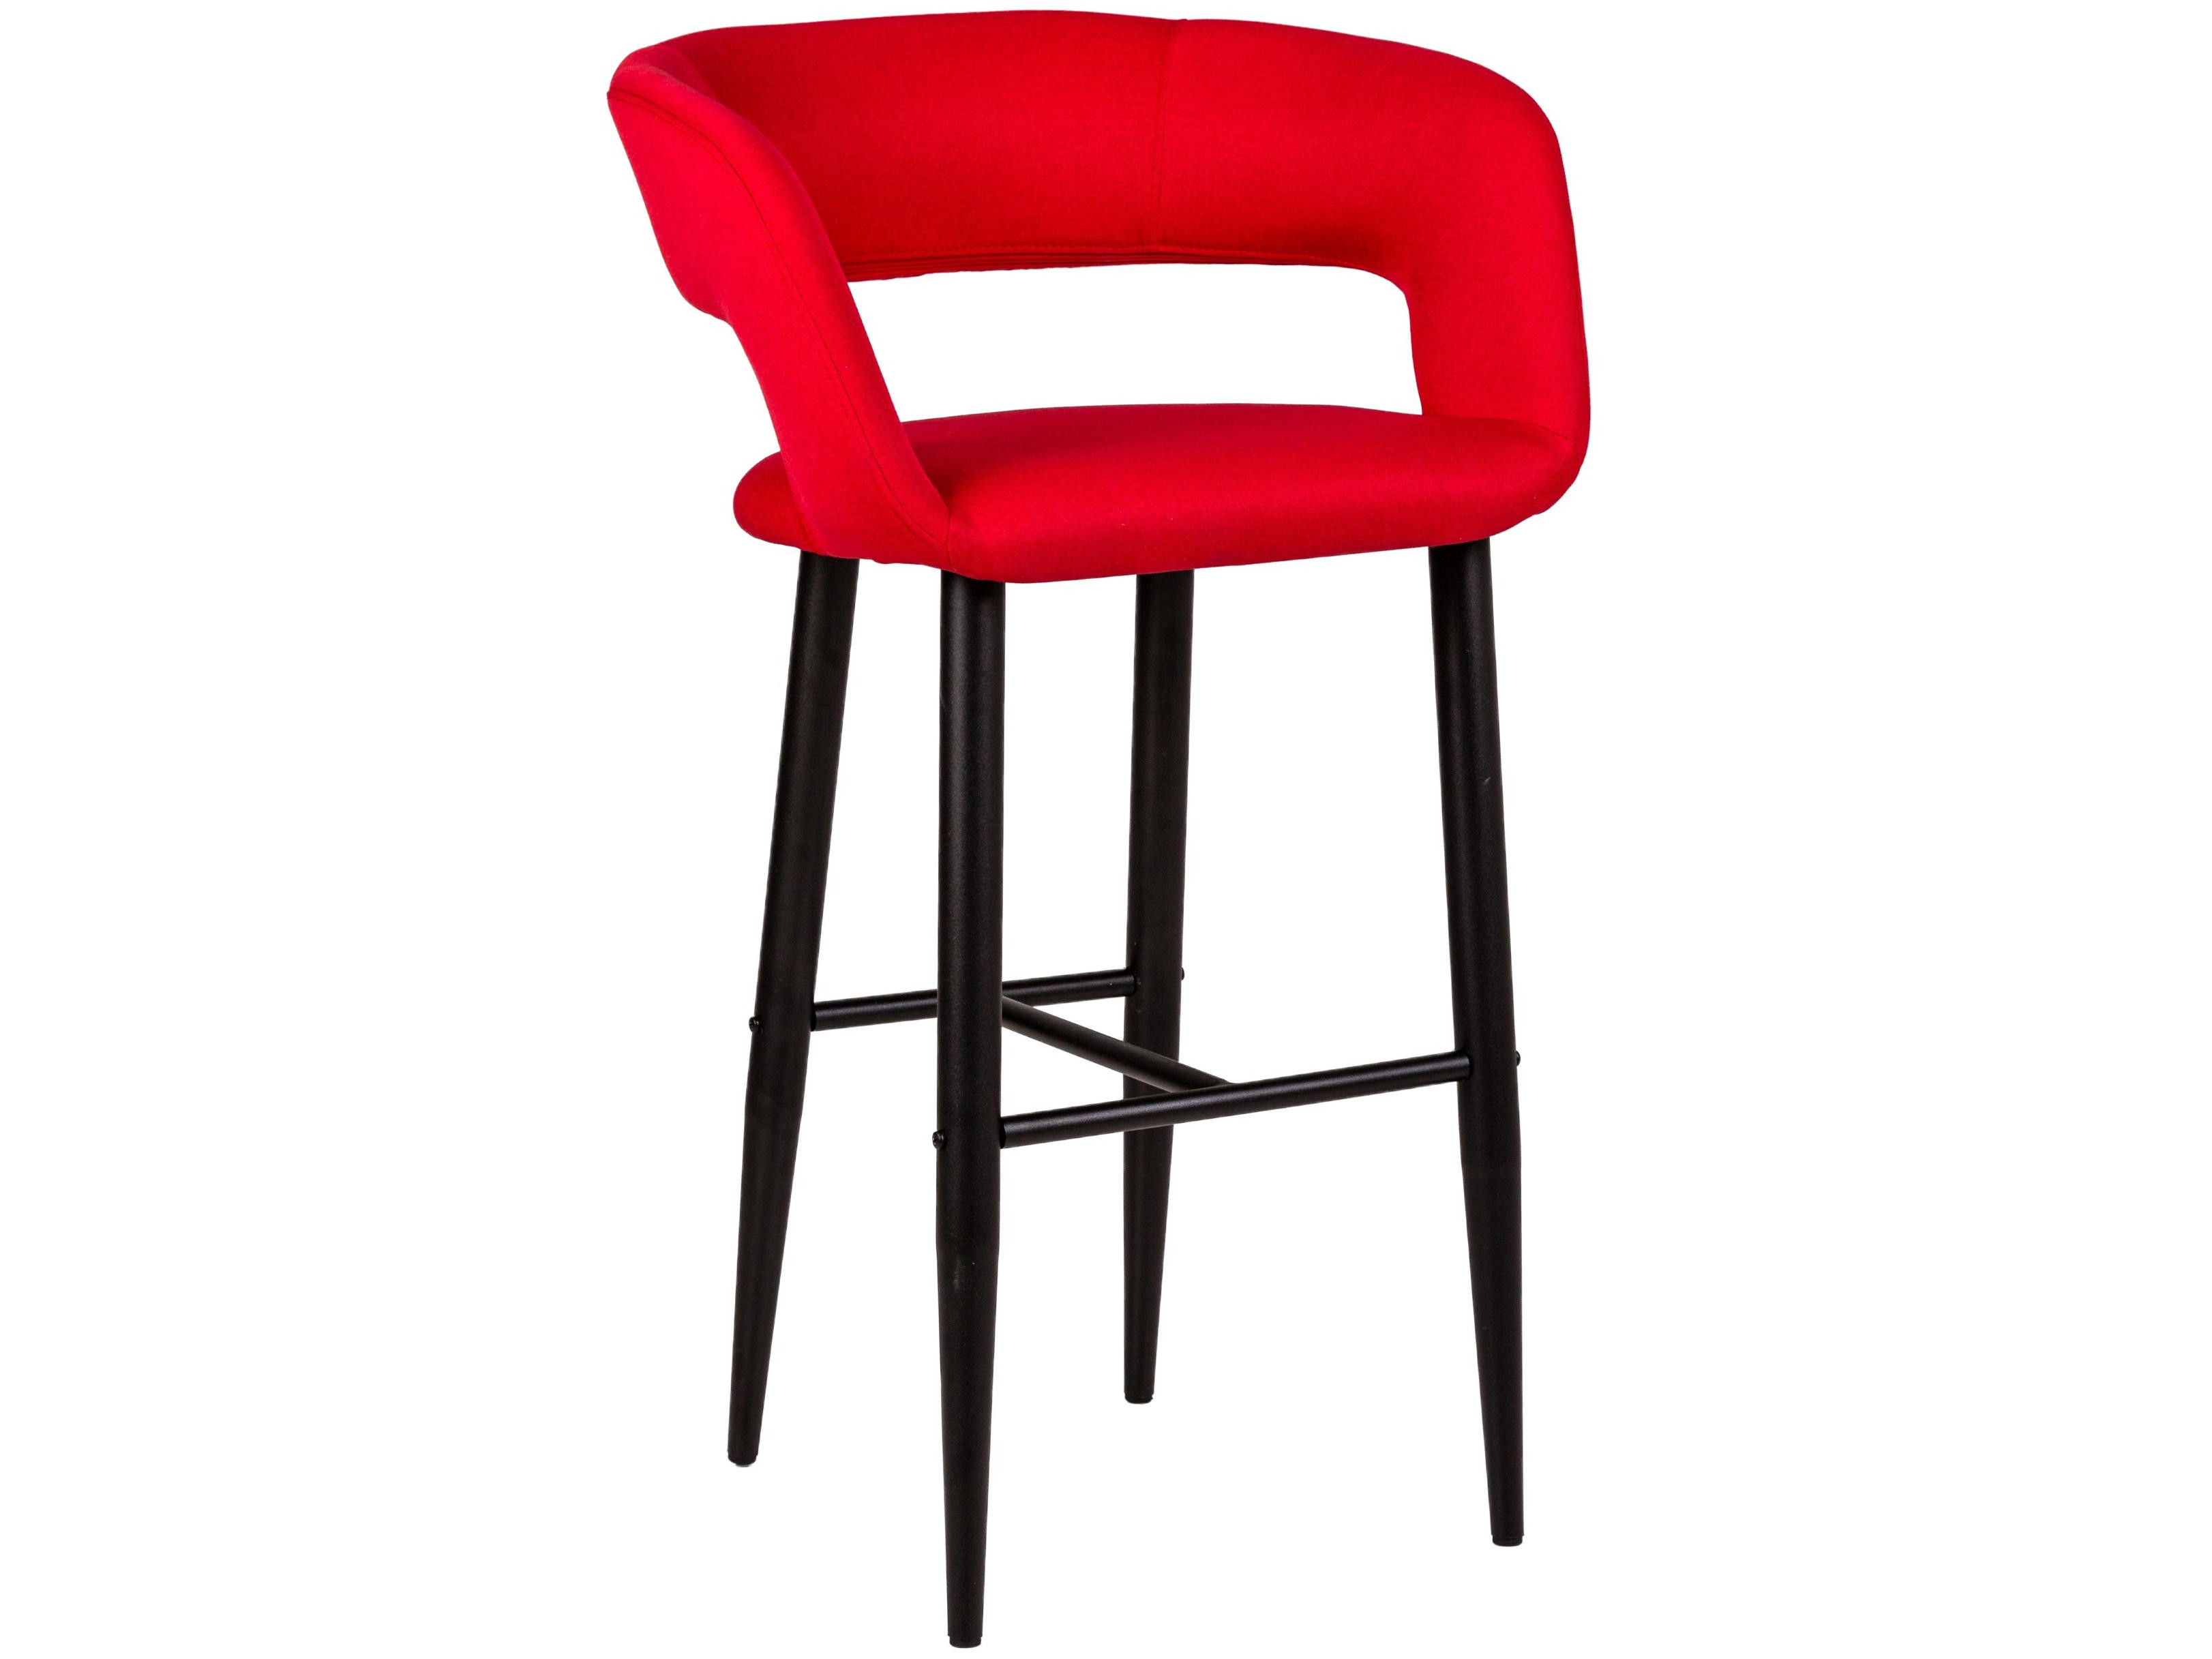 Стул барный Hugs Красн/Черный Красный, Металл барный стул студия стул черный простой бар франклин стул складной стул домашний барный стул